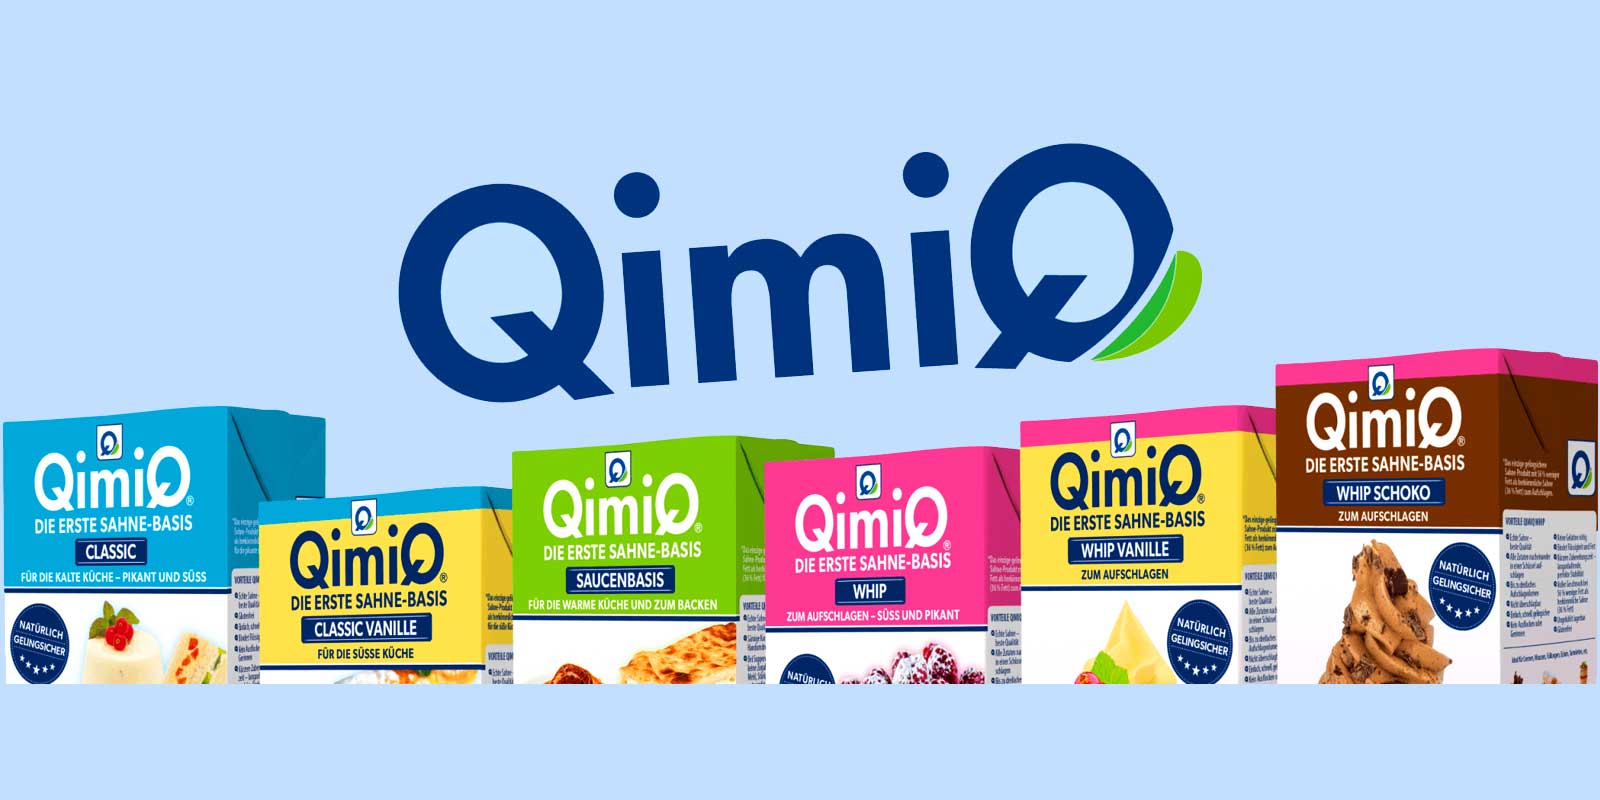 QimiQ proizvodi QimiQ je prva lagana kremasta baza sa samo 15% masti. Neutralnog je ukusa i stoga je pogodan za slatku i slanu hranu, kao i za topla i hladna jela. QimiQ je 100% prirodan proizvod.